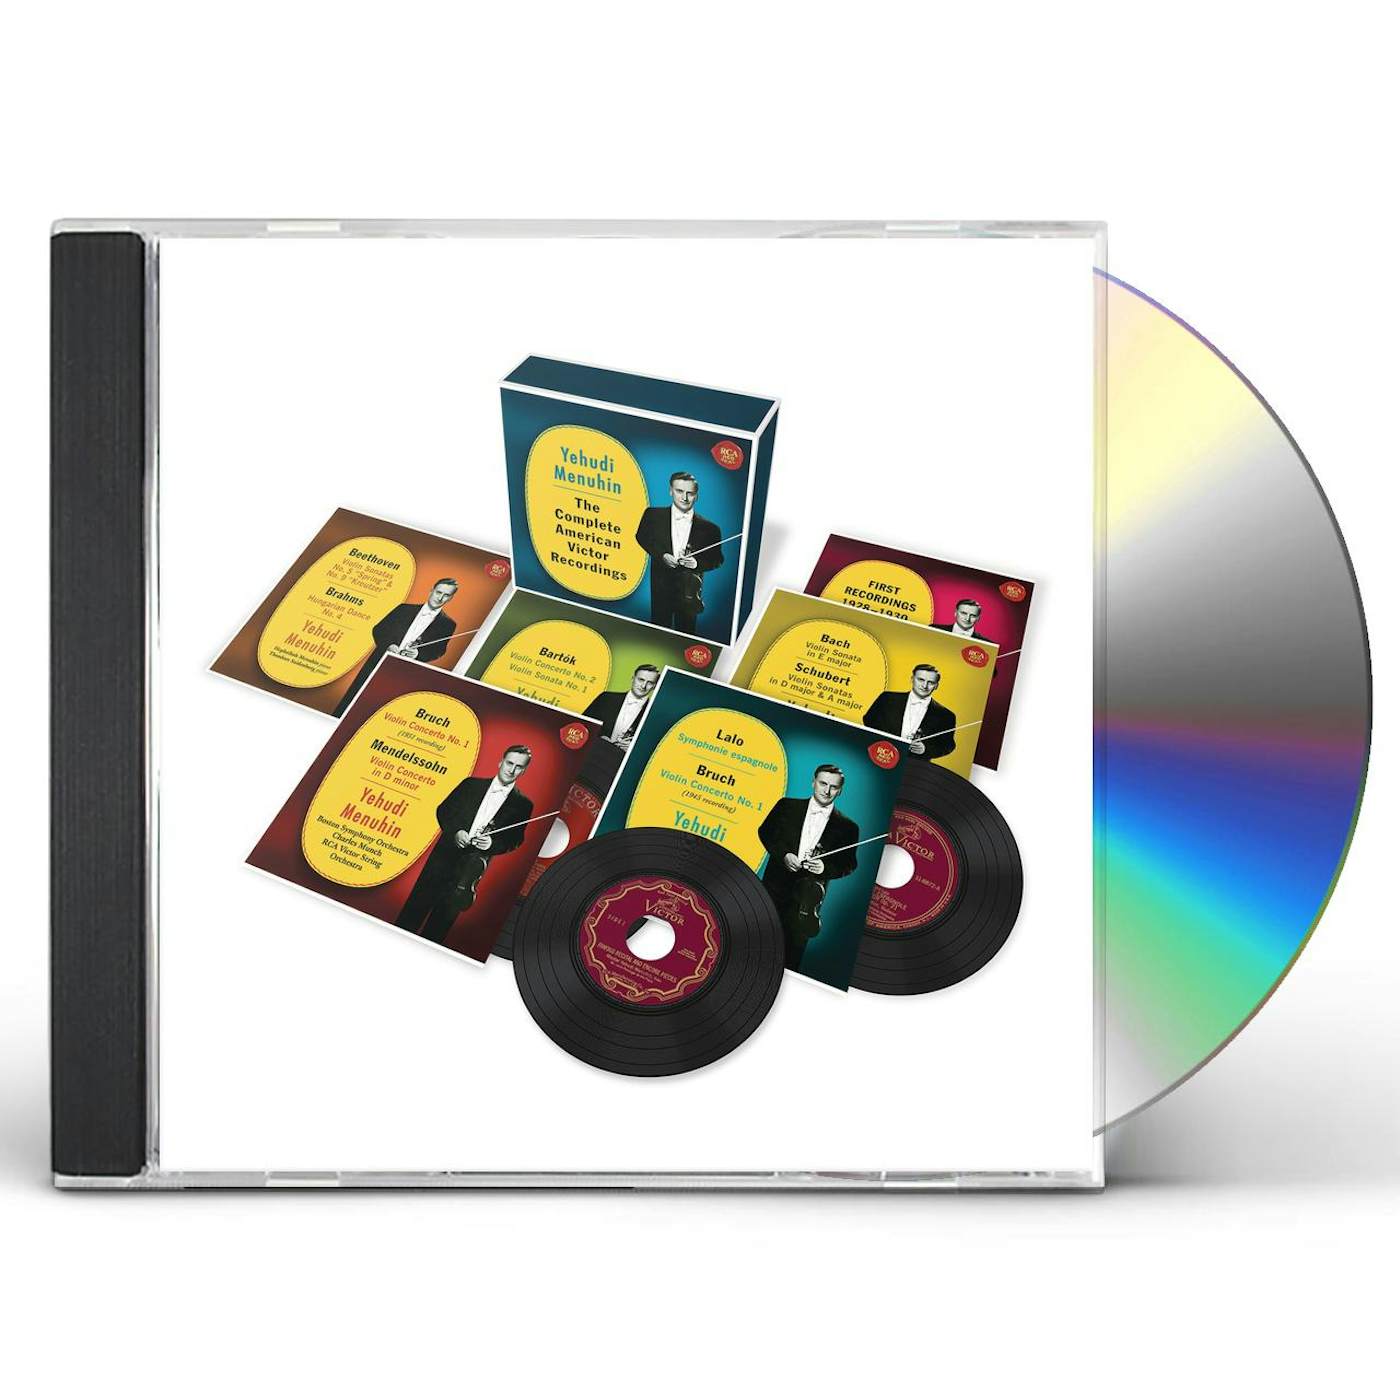 Yehudi Menuhin COMPLETE AMERICAN VICTOR RECORDINGS CD